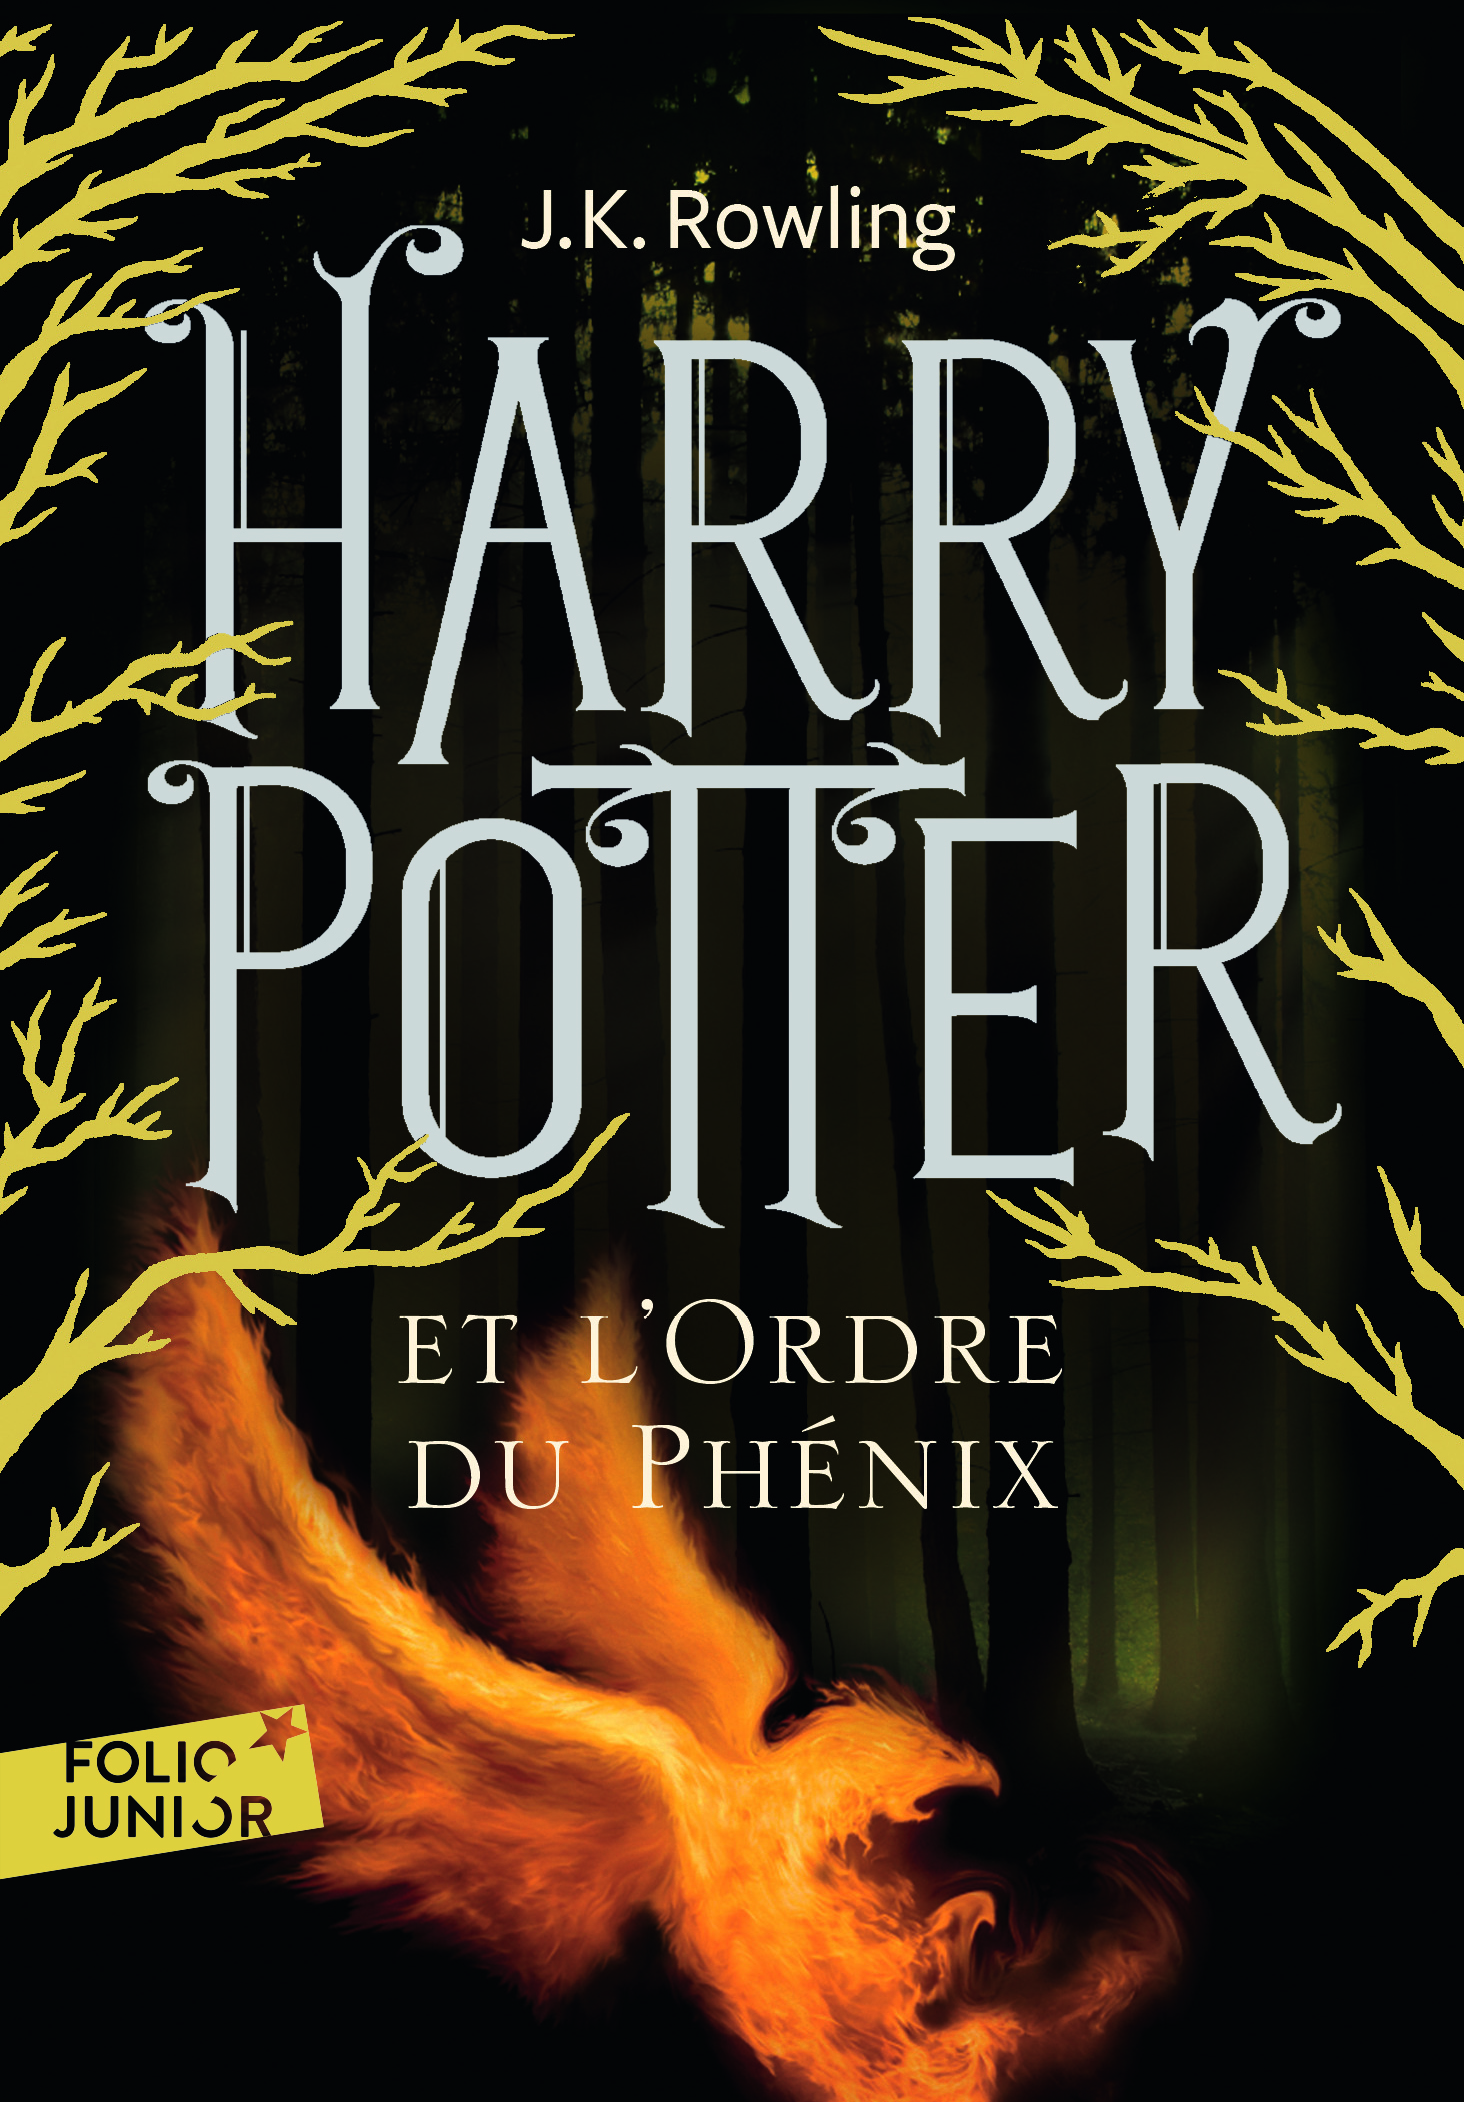 Harry Potter et l'Ordre du Phenix / Орден Феникса